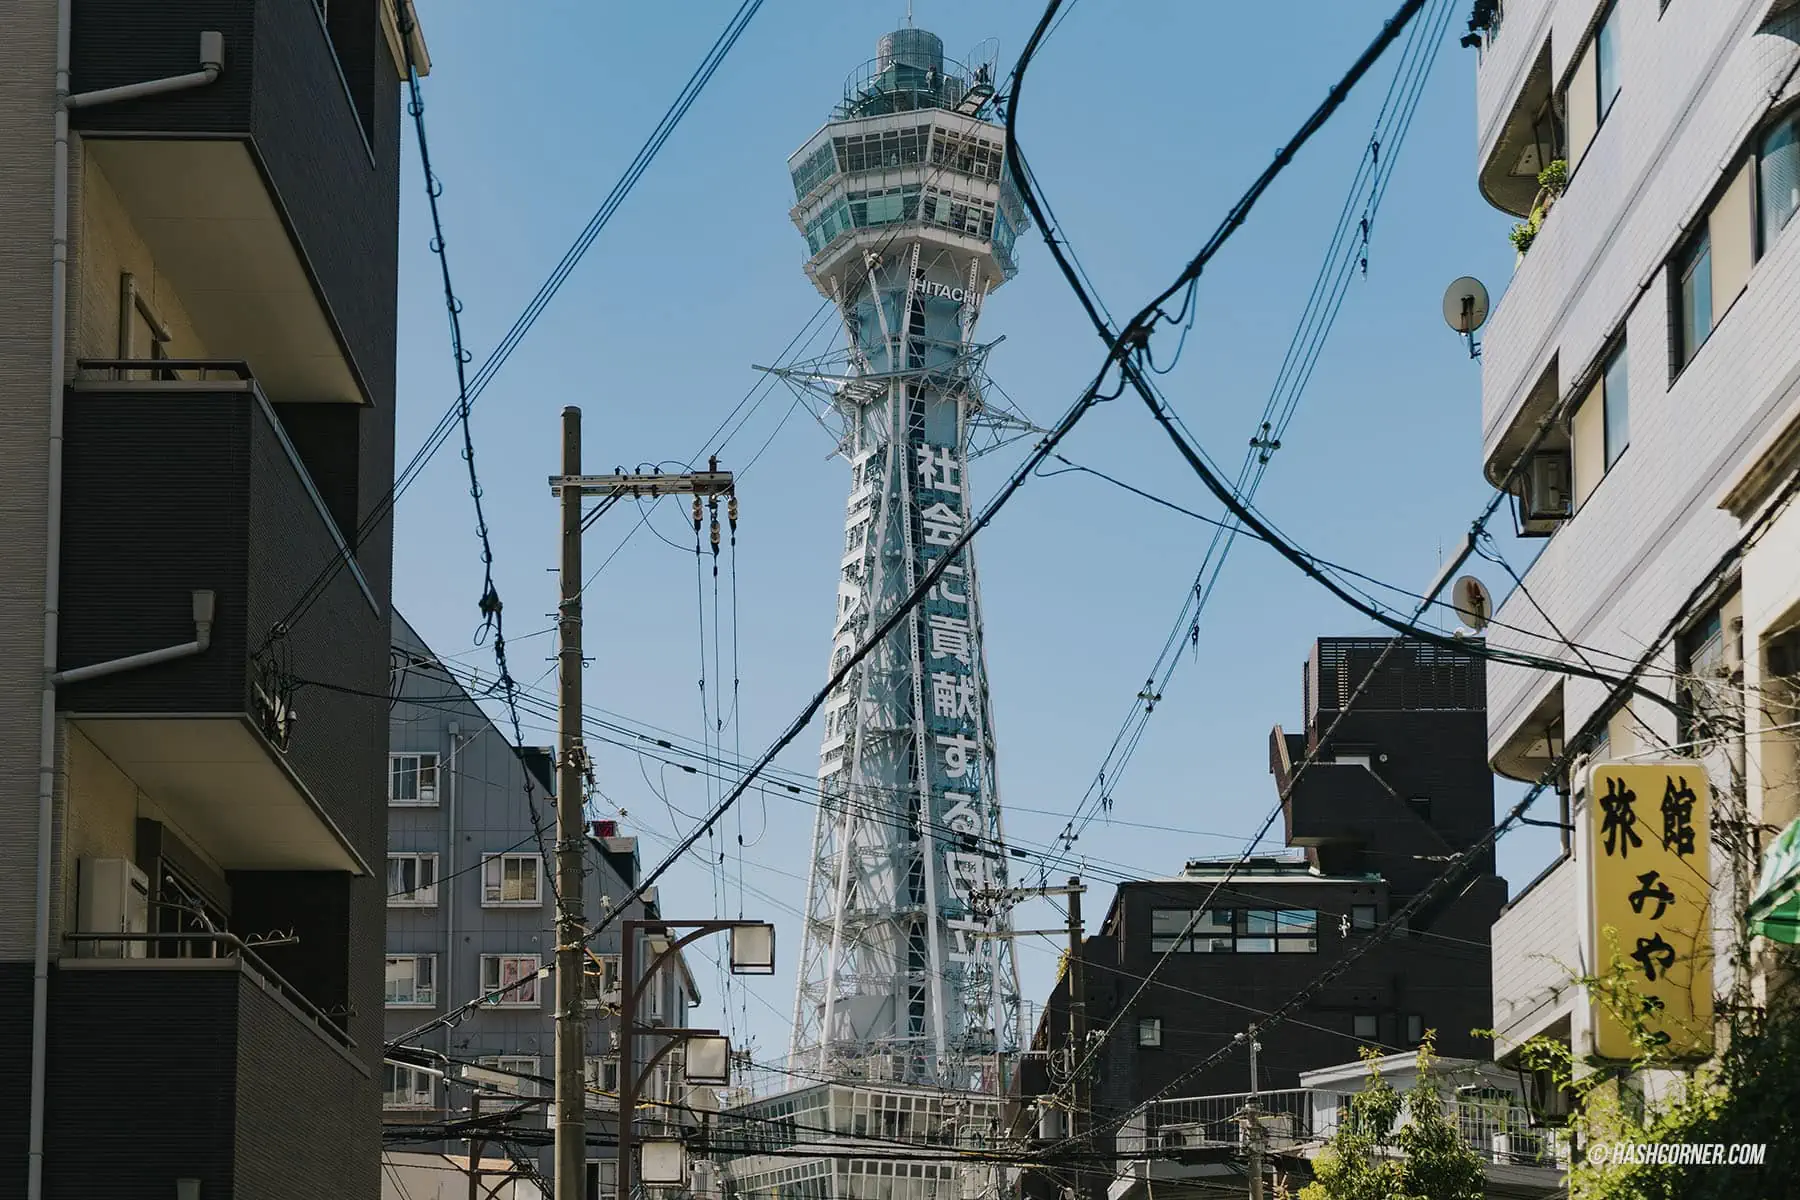 รีวิว หอคอยซึเทนคาคุ (Tsutenkaku Tower) x โอซาก้า หอคอยเก่าแก่คู่เมือง